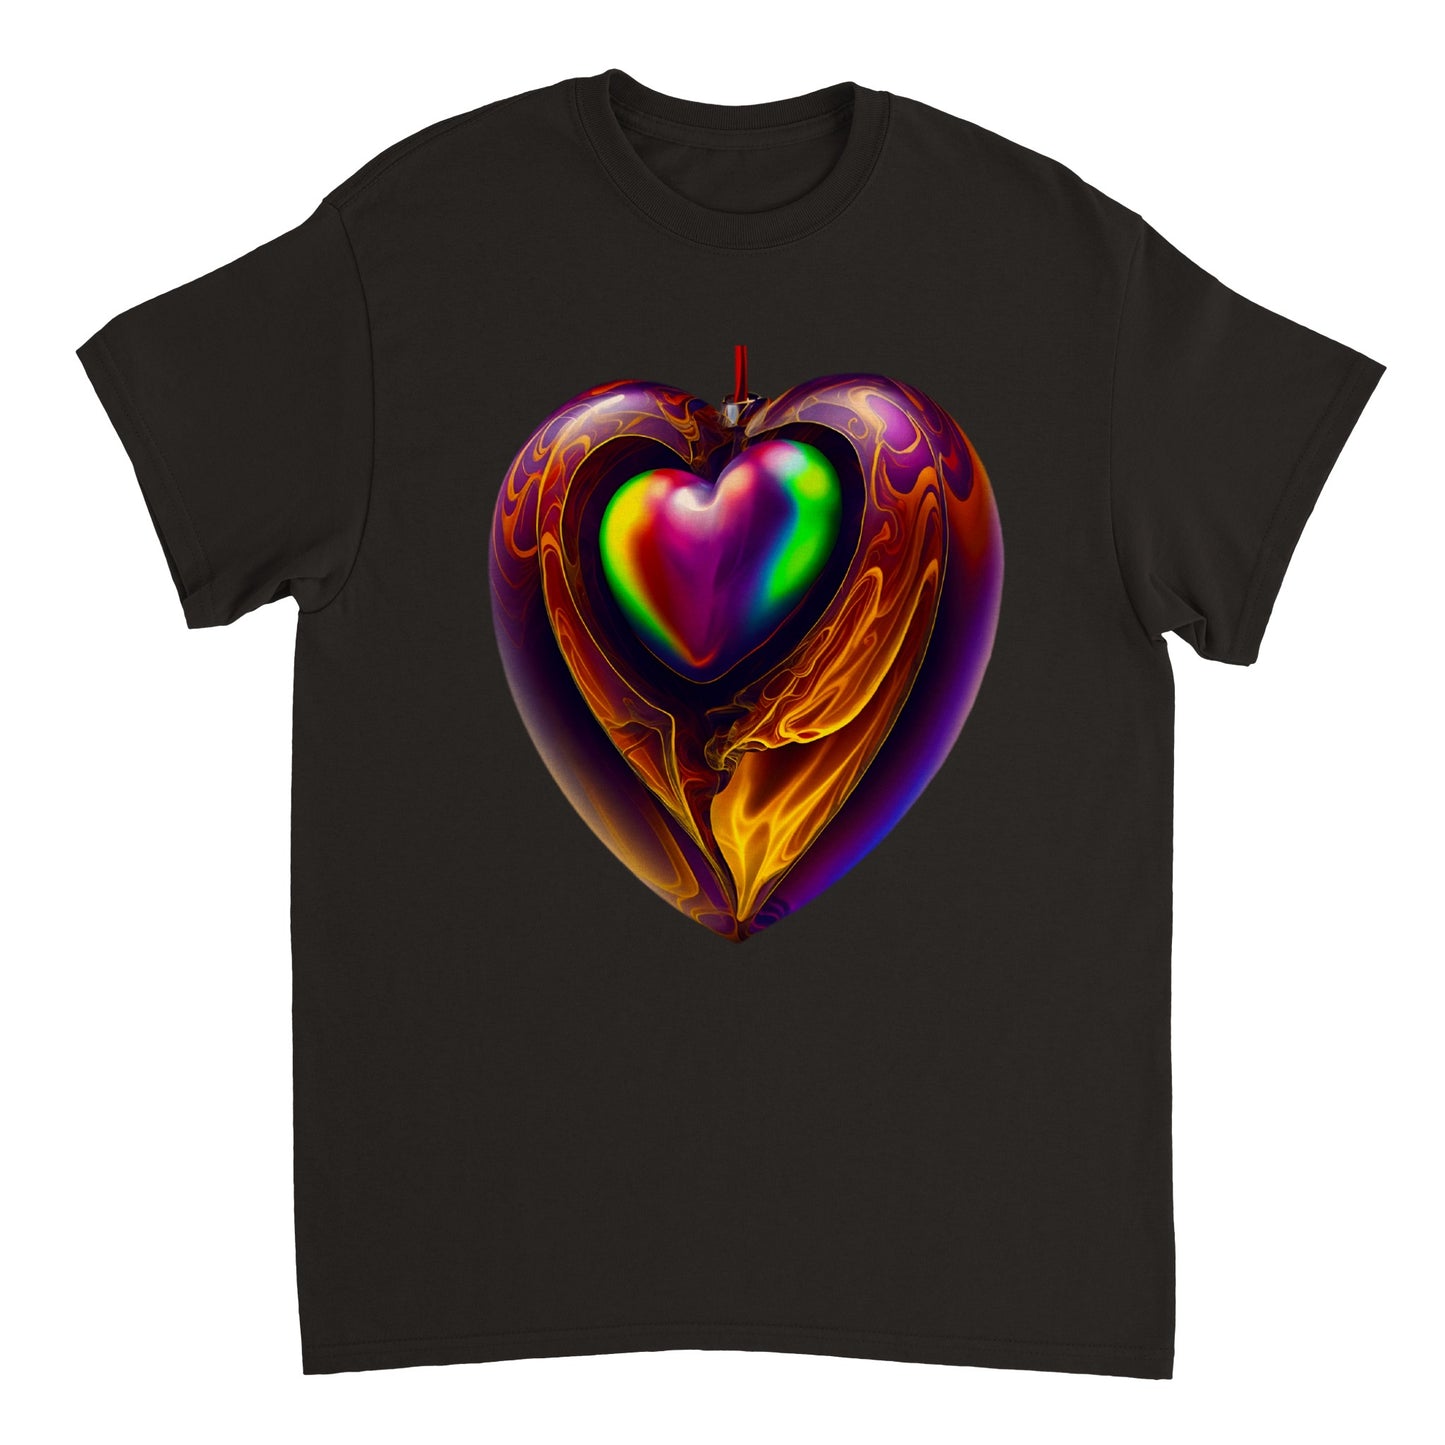 Love Heart - Heavyweight Unisex Crewneck T-shirt 104